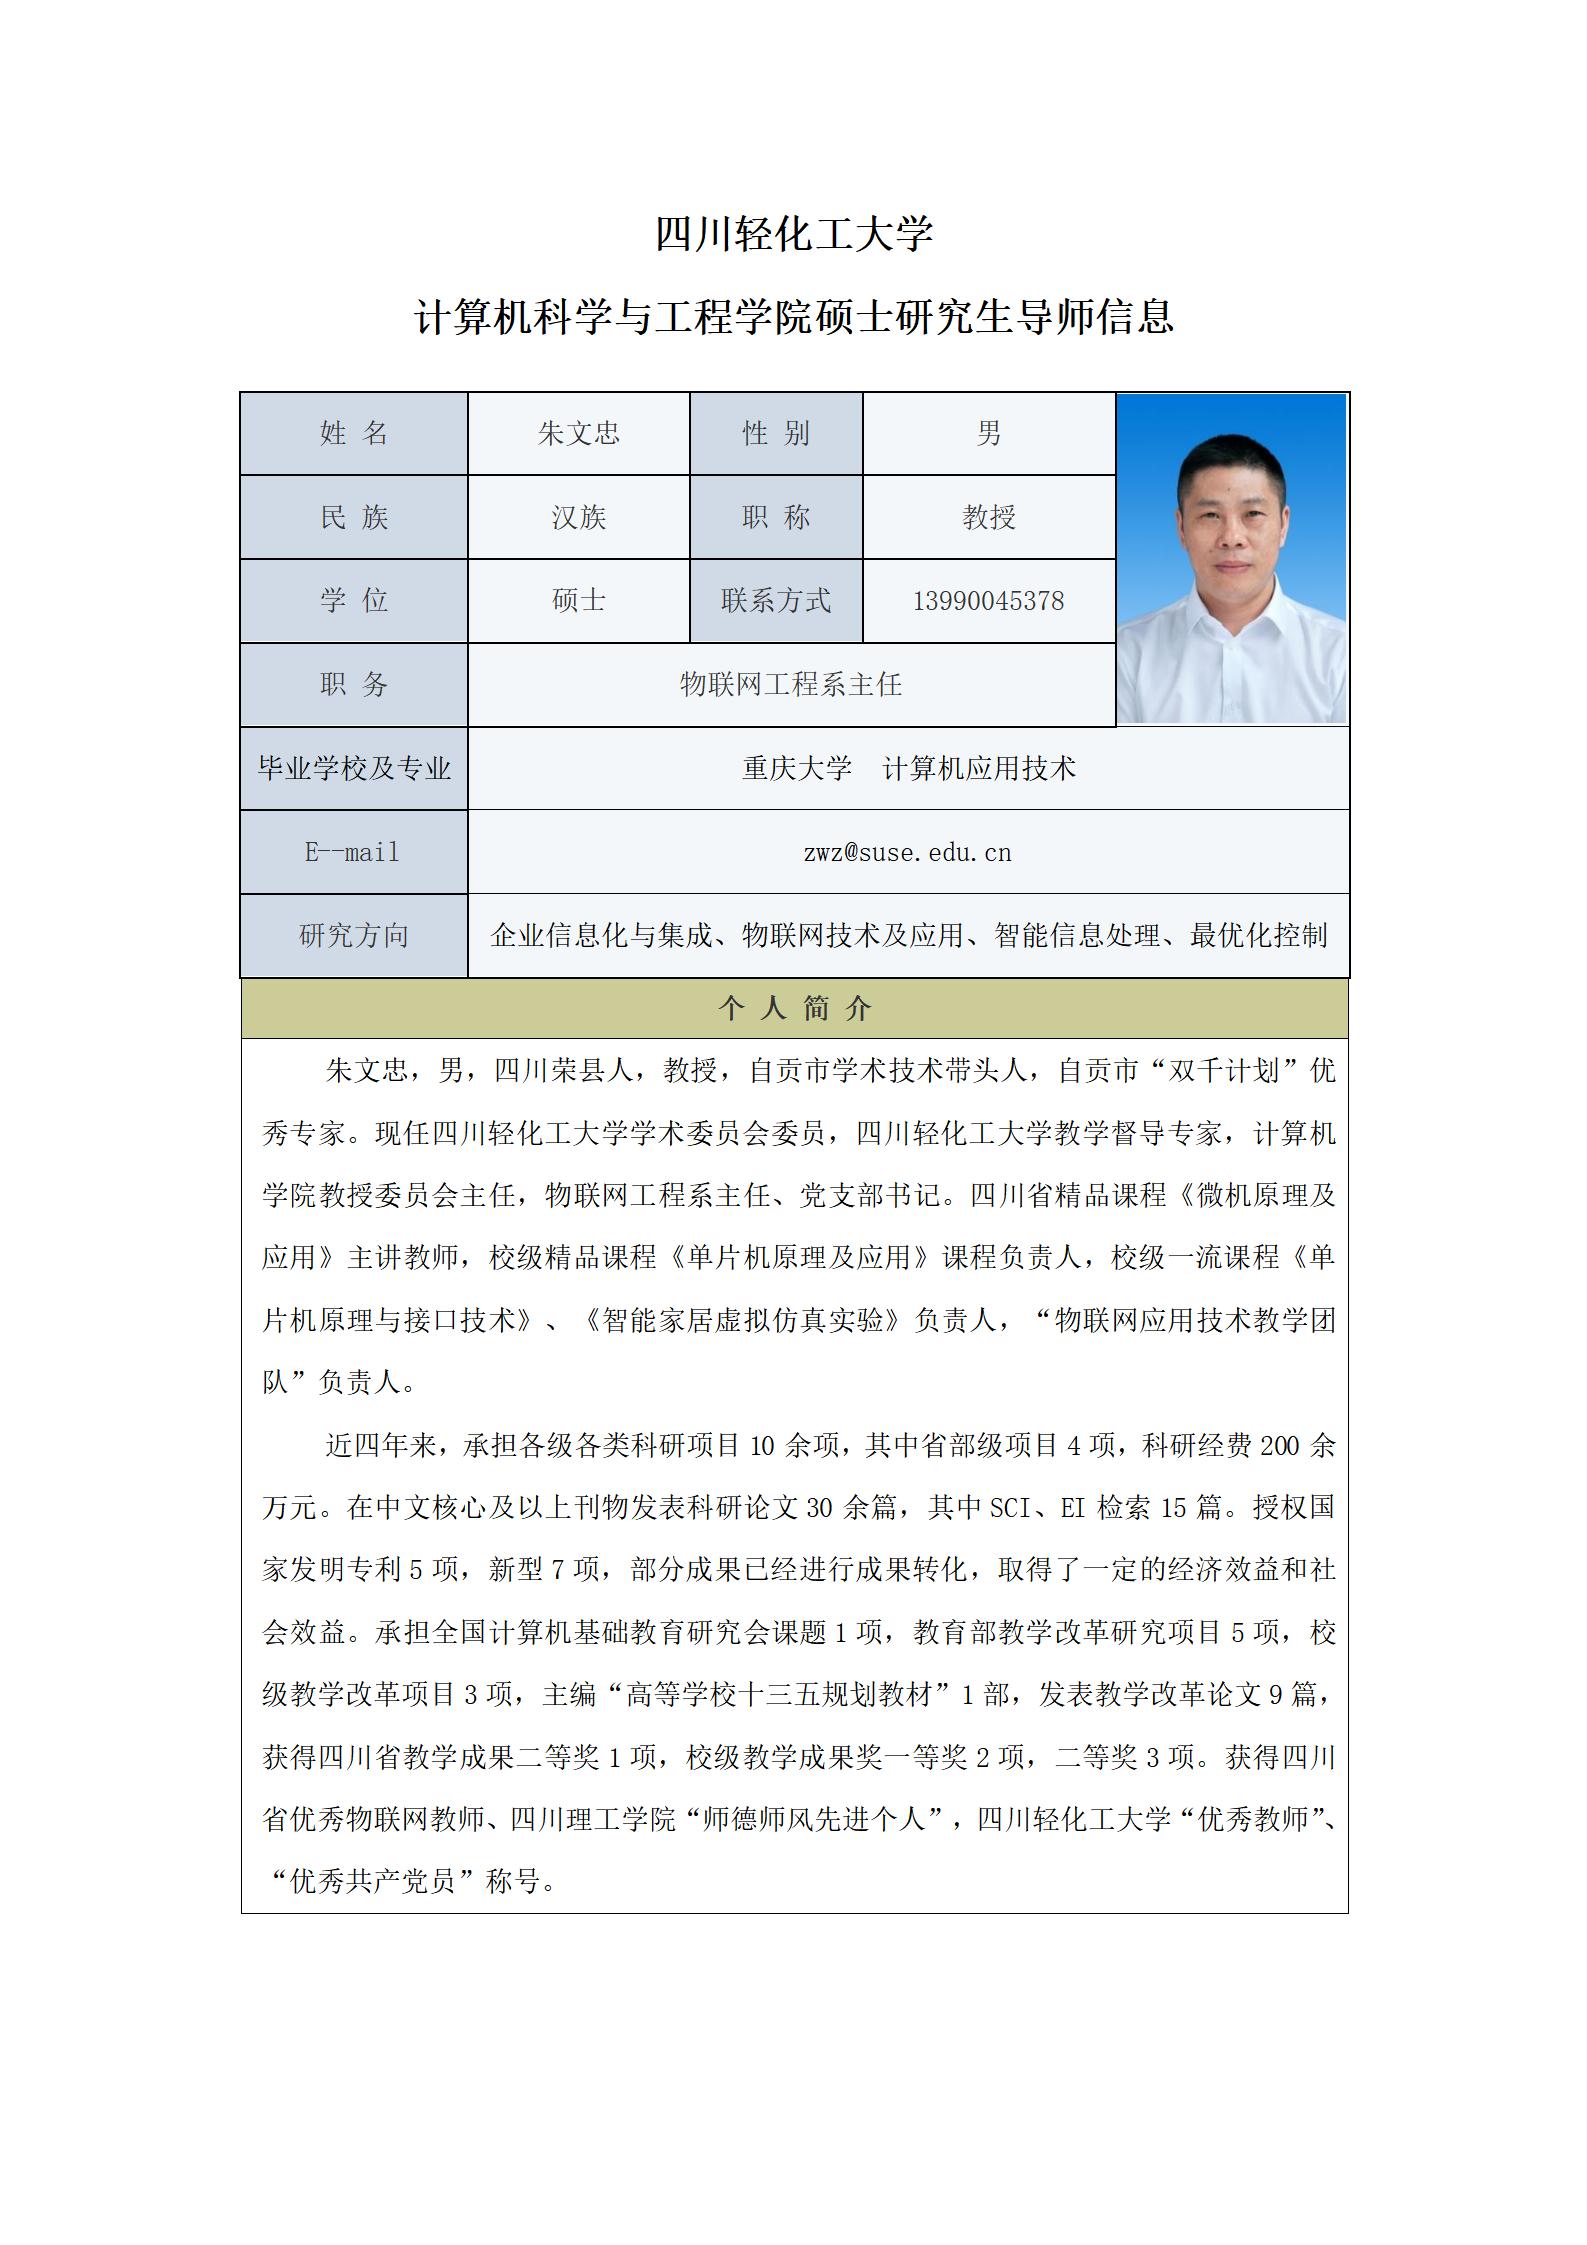 朱文忠-2023计算机科学与工程学院硕士生导师信息表（网站）_01.jpg